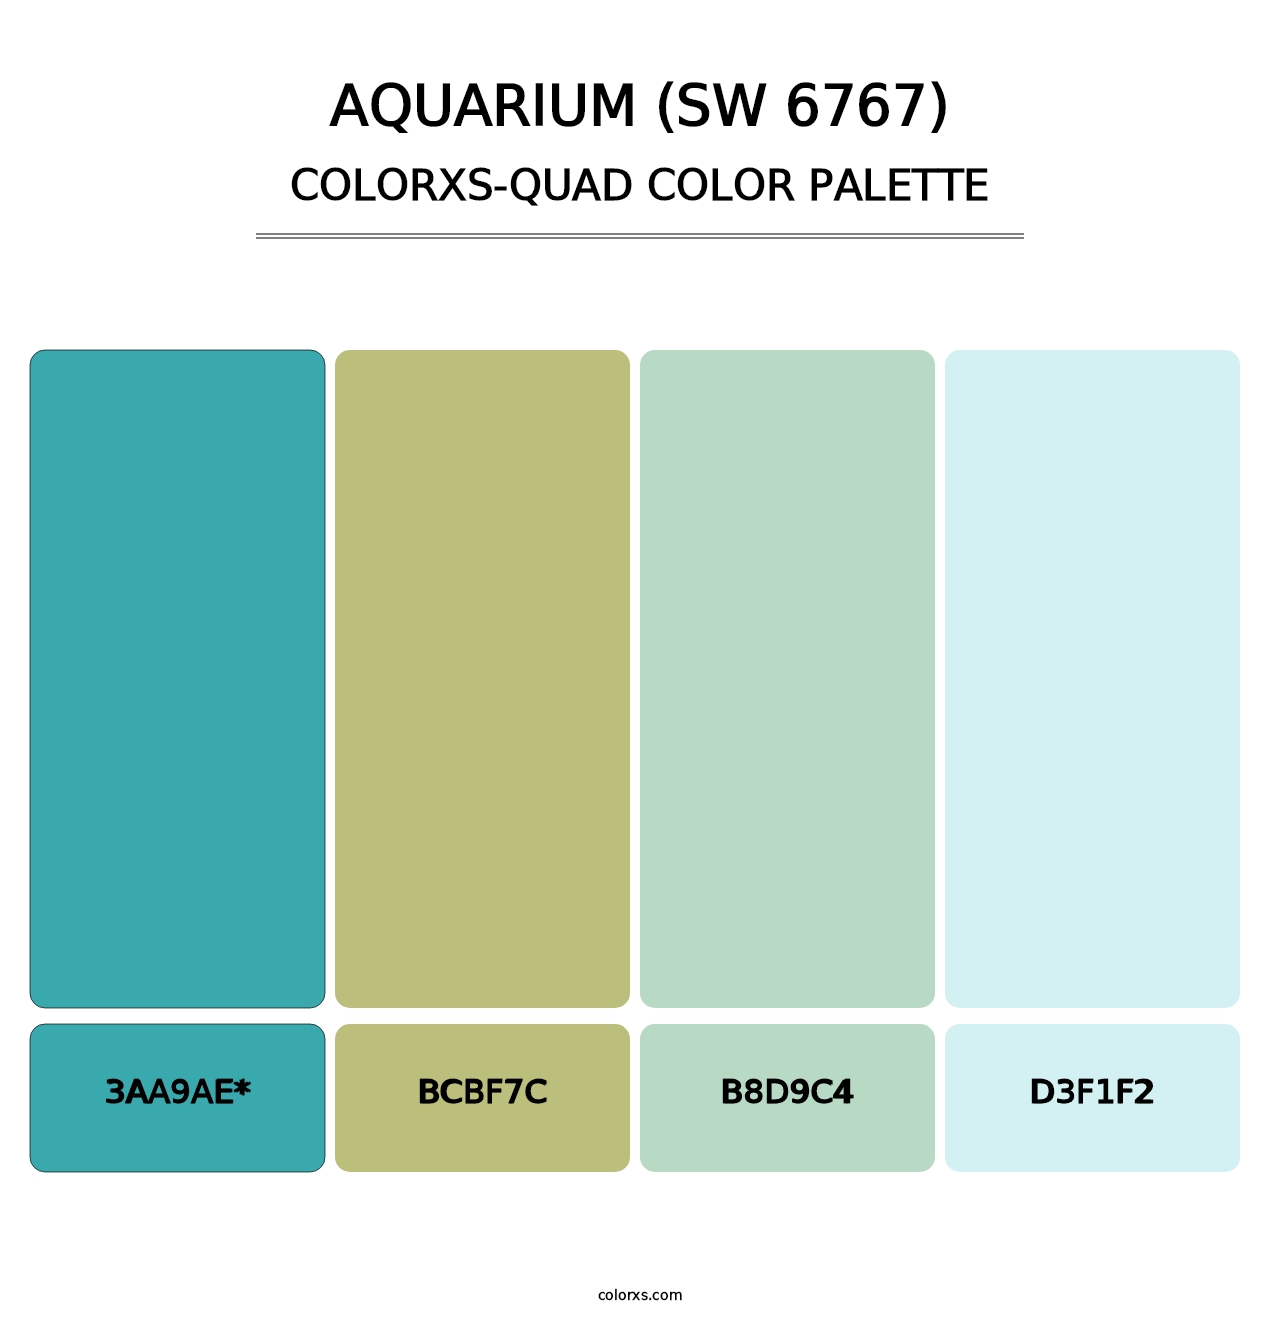 Aquarium (SW 6767) - Colorxs Quad Palette